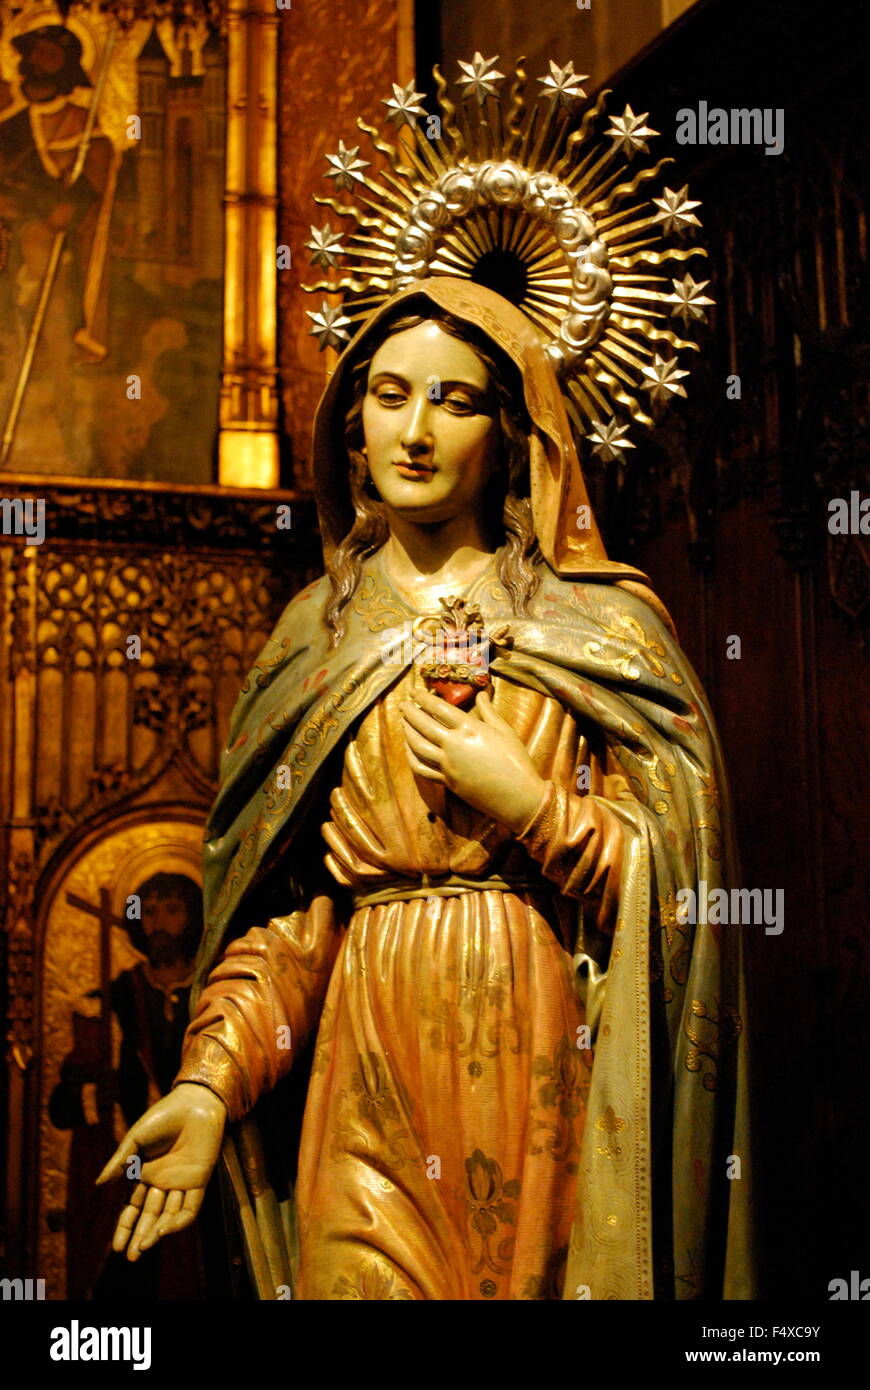 Estatua de la santísima Virgen María en el interior de la Catedral de la Santa Cruz y Santa Eulalia, también conocida como la Catedral de Barcelona. España Foto de stock